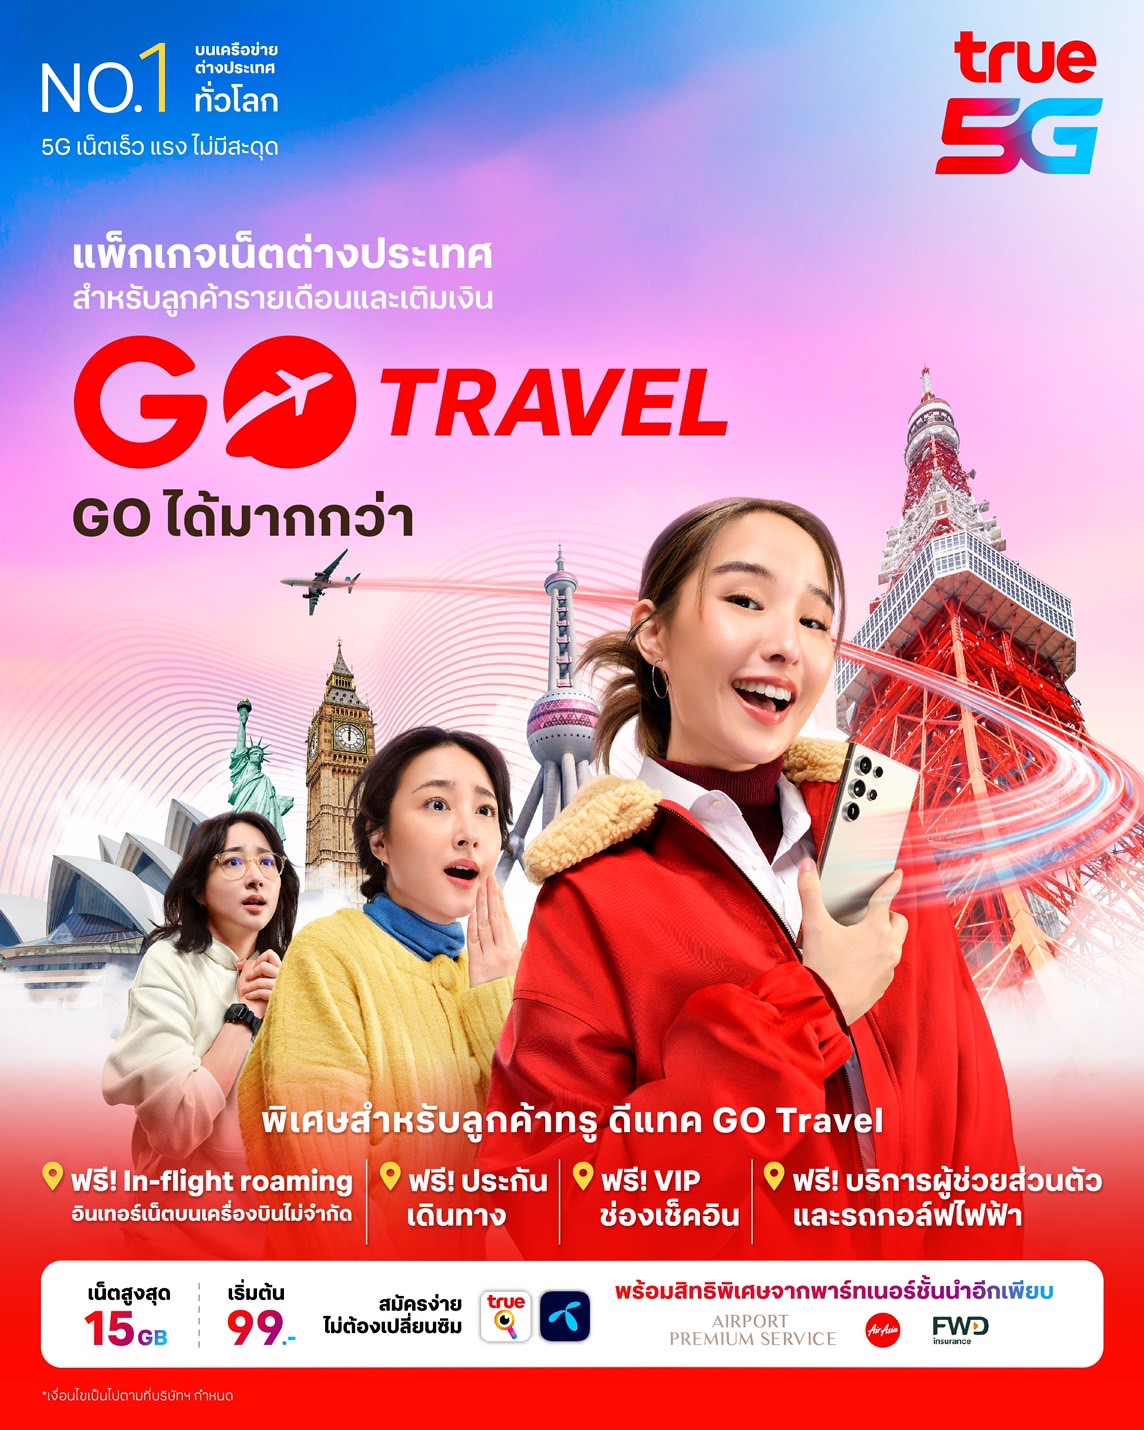 ทรู พาลูกค้าล้ำไปอีกขั้นกับ “GO Travel” เปลี่ยนโฉมประสบการณ์โรมมิ่งรูปแบบใหม่ ครั้งแรกในไทย !! ท่องเน็ต โทร ส่งข้อความได้ทุกที่ทุกเวลา ทั้งบนเครื่องบินและเรือสำราญข้ามแดน เอาใจนักเดินทางทั้งทรูและดีแทค ใช้งานผ่านเครือข่ายพันธมิตร 5G ระดับโลก เร็วสุด แรงสุด ไม่จำกัดดาต้า